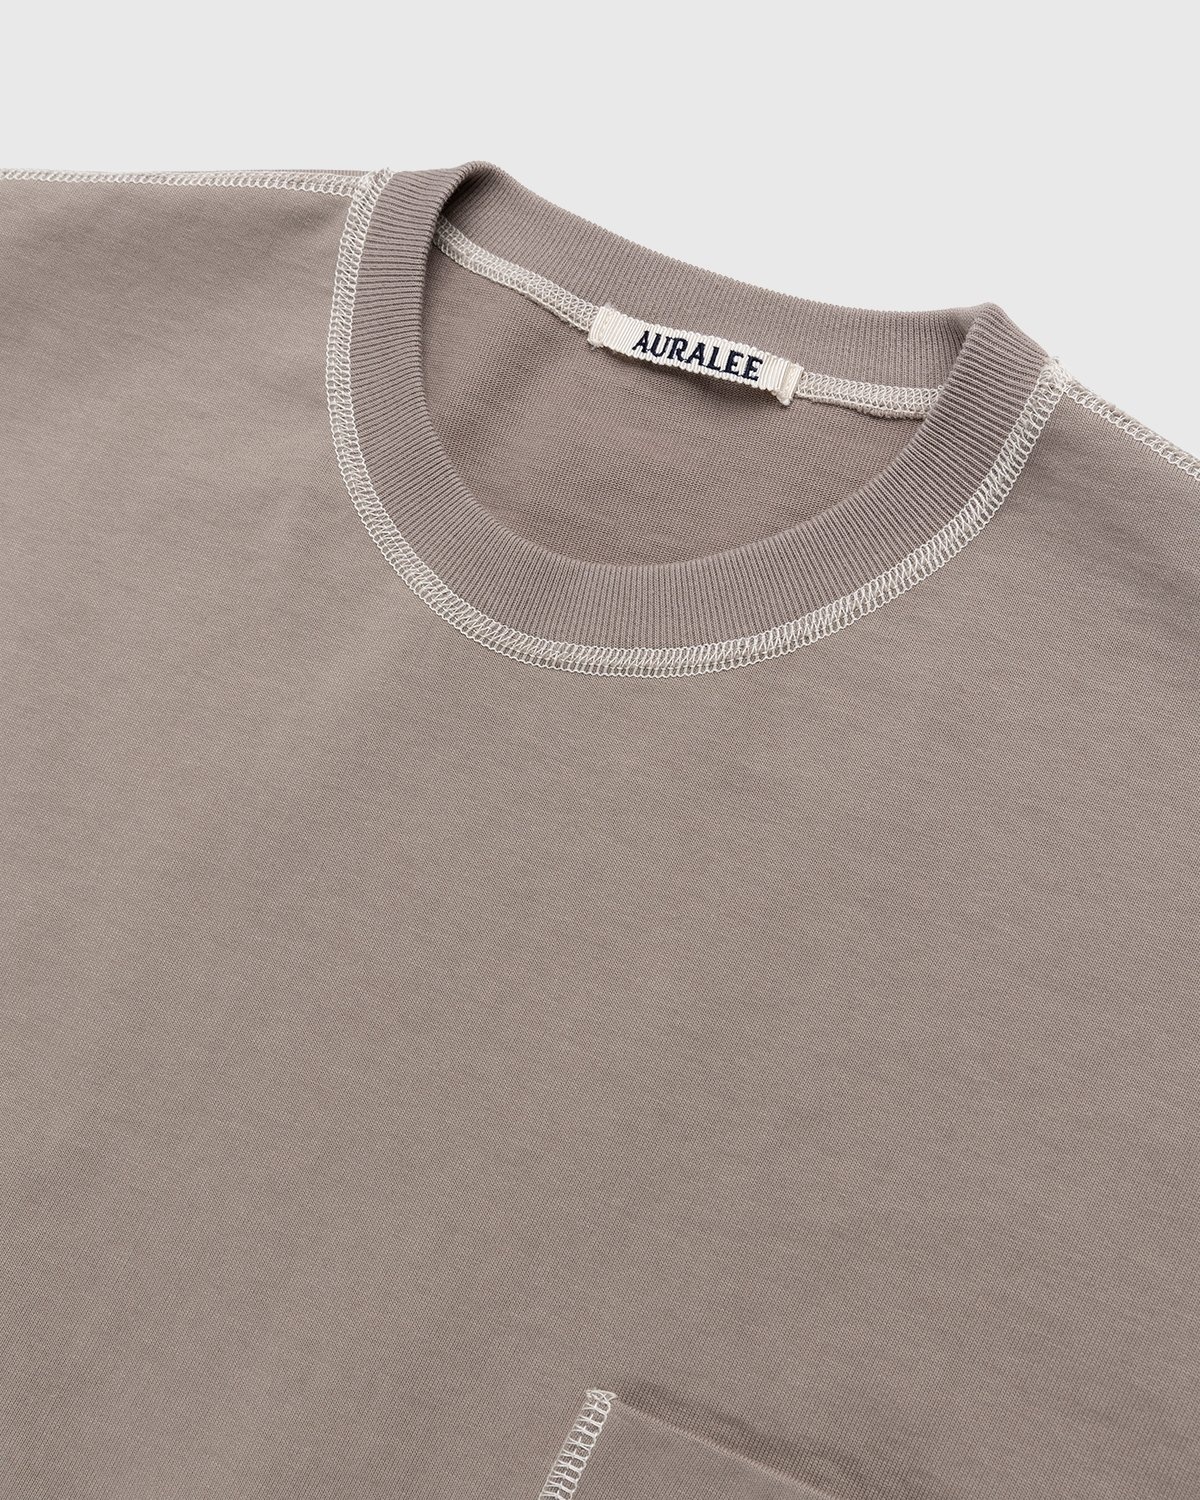 Auralee – Cotton Knit Pocket T-Shirt Grey Beige - T-shirts - Beige - Image 3